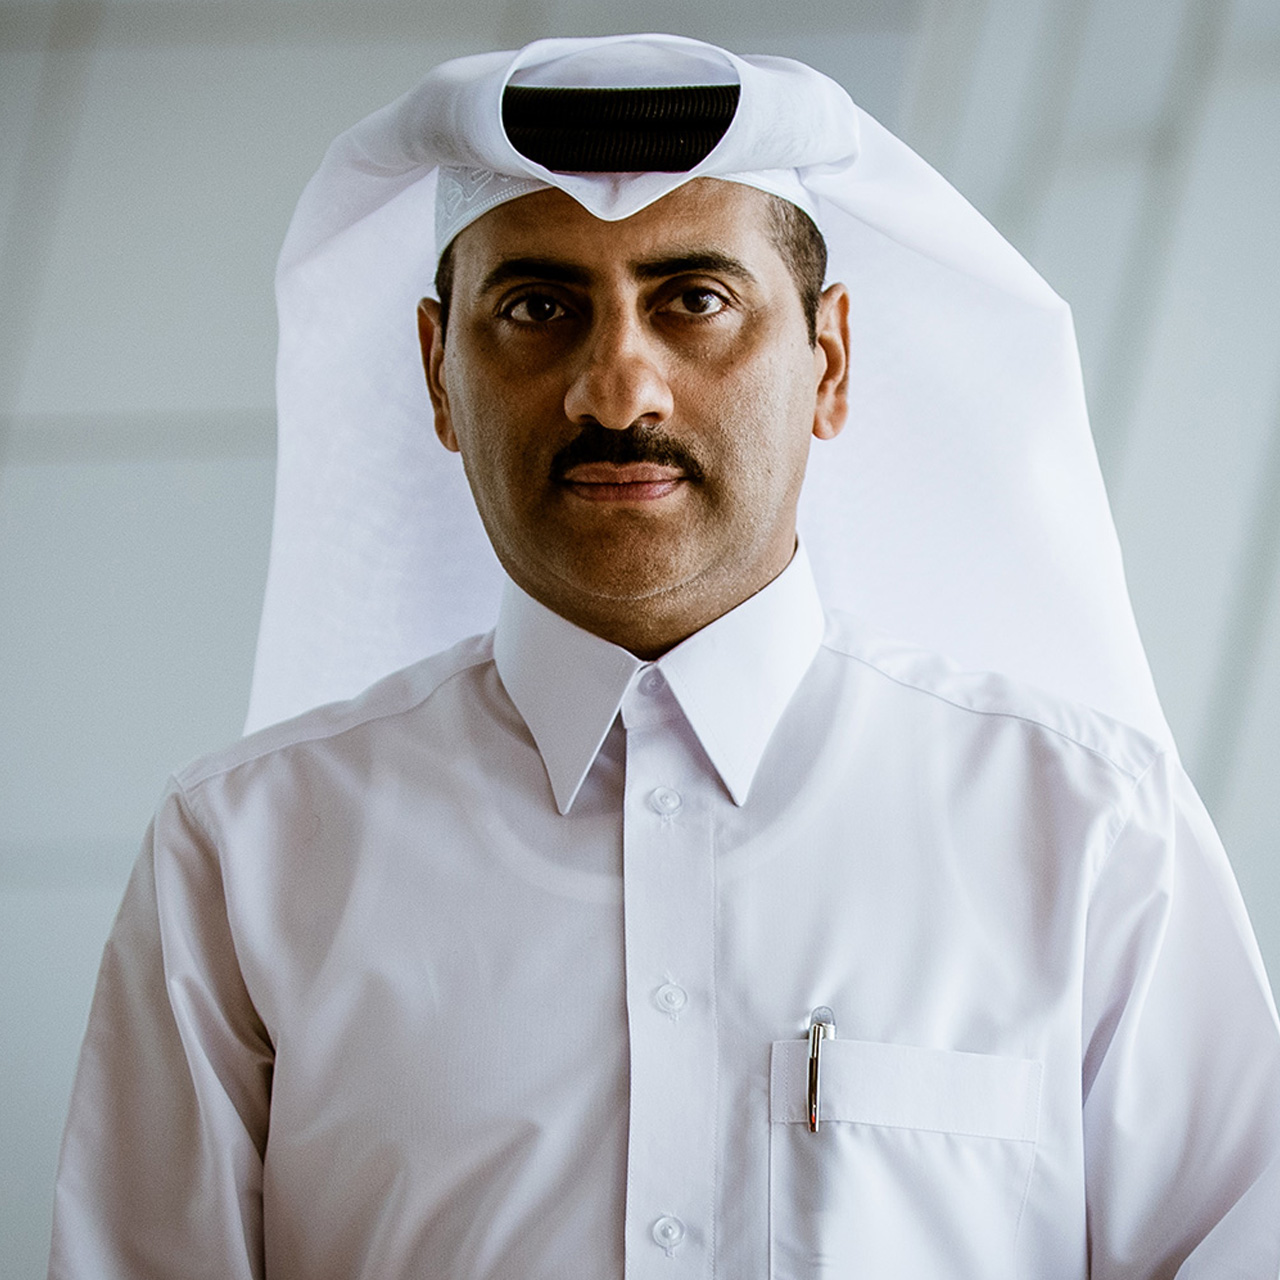 Yosouf Abdulrahman Al Salehi